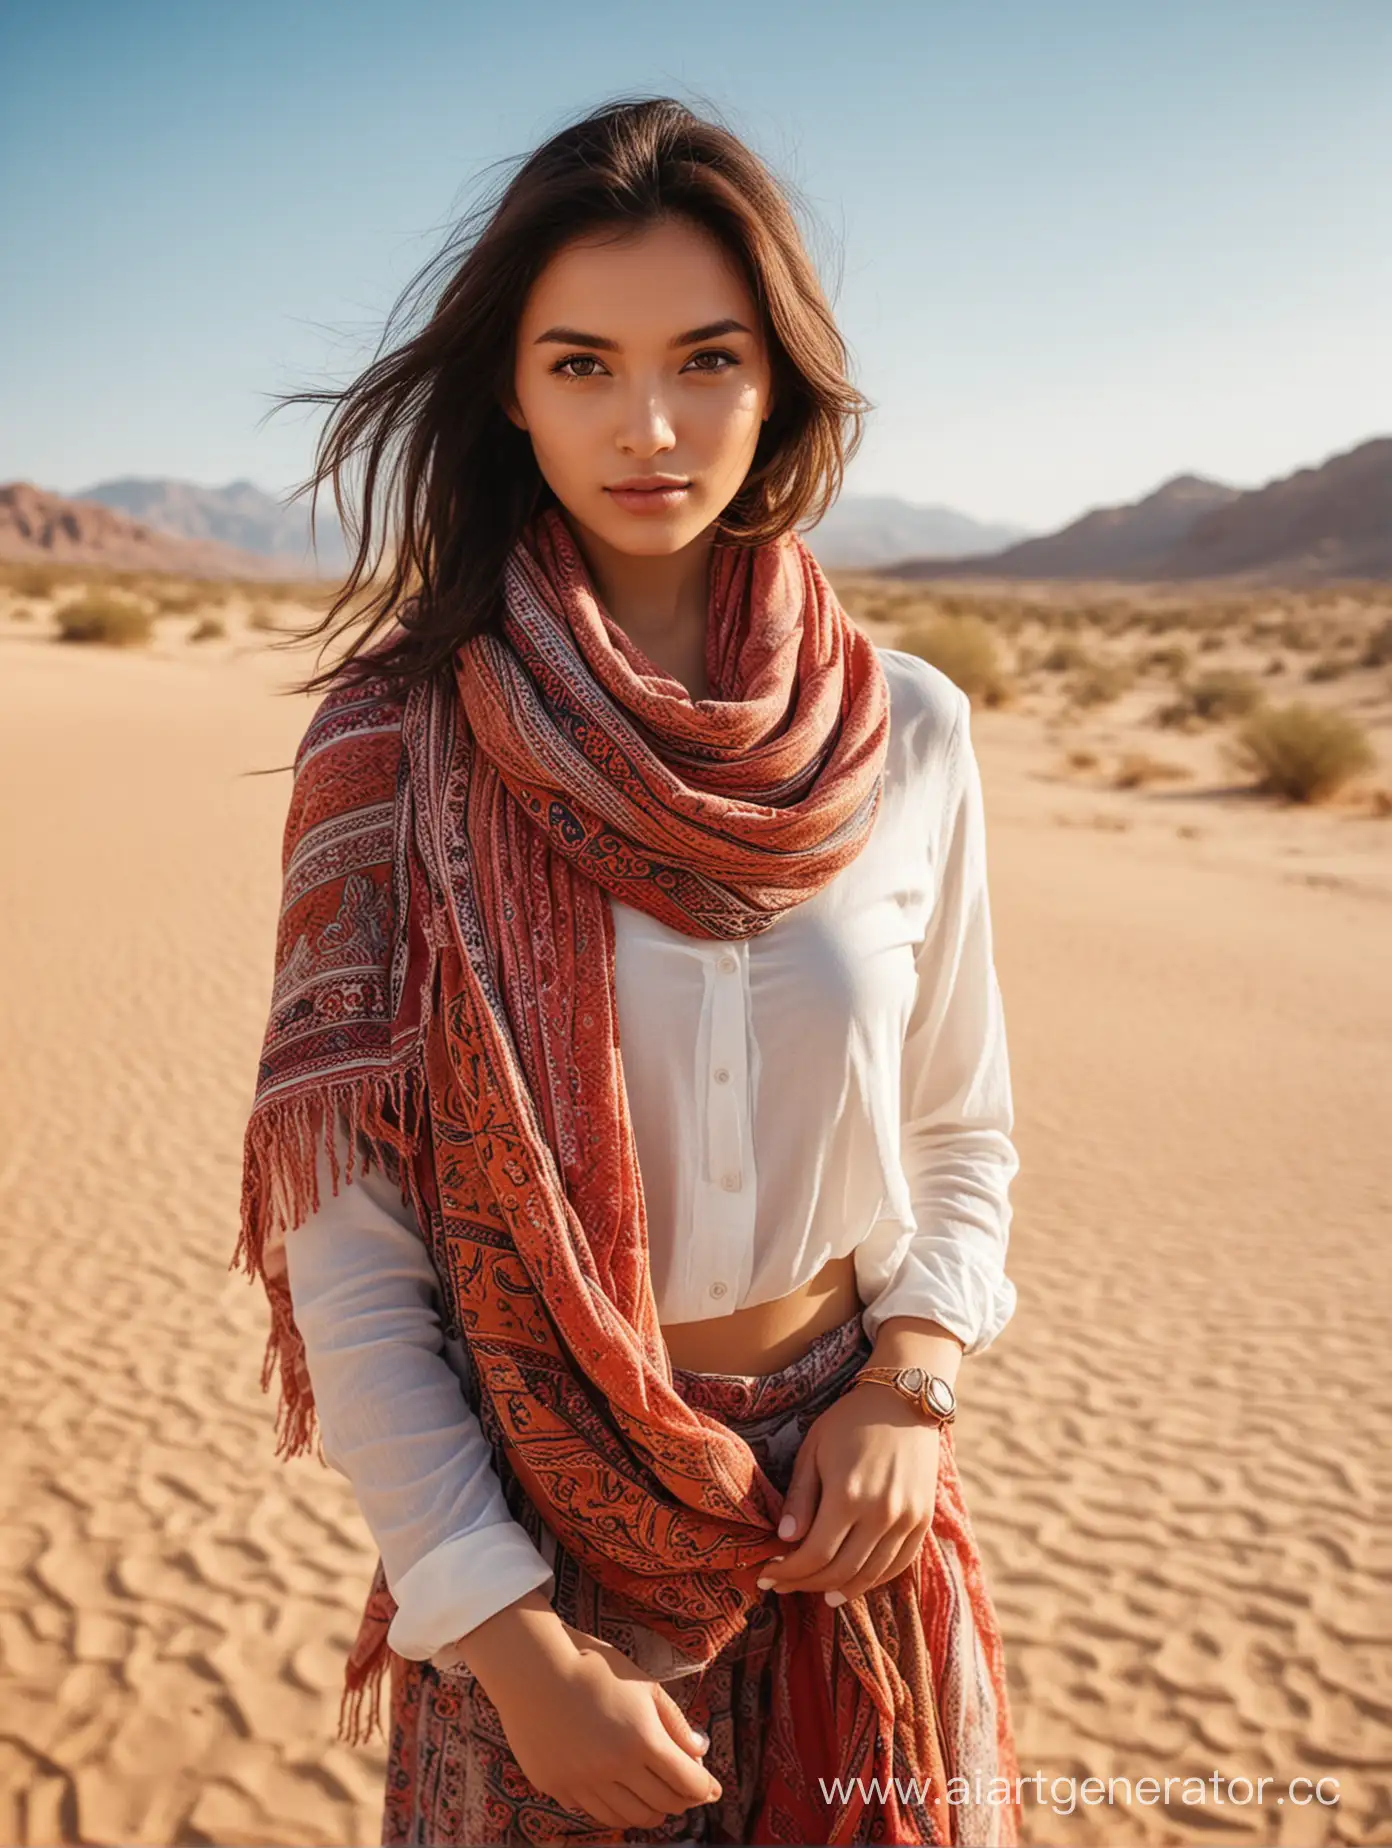 Eastern-Girl-in-Desert-Wearing-Vibrant-Scarf